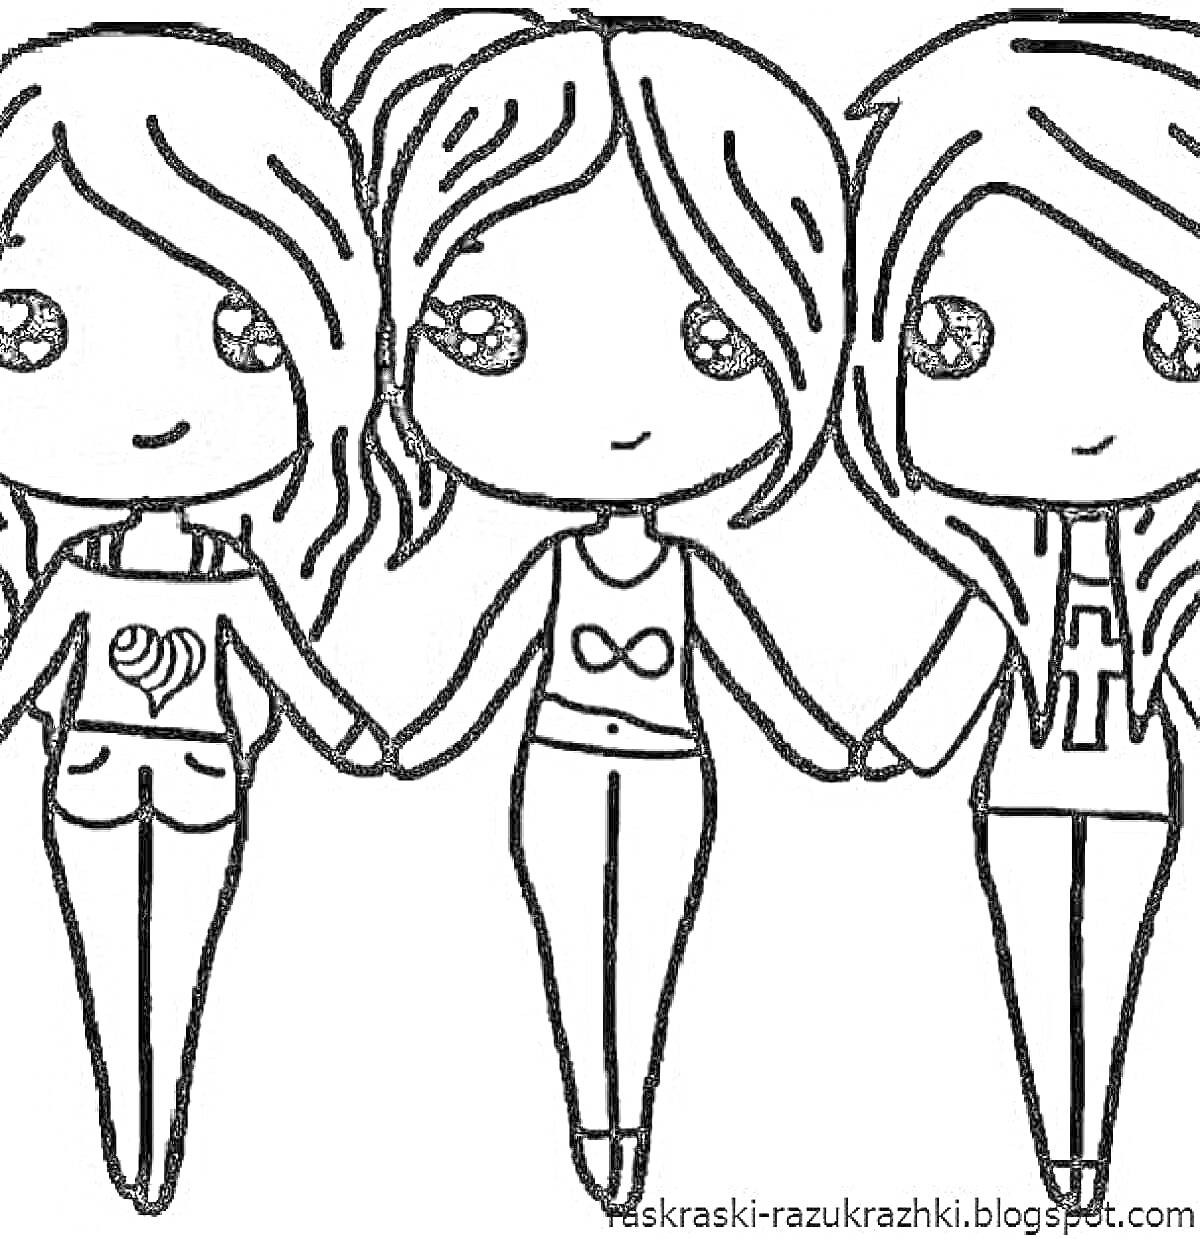 Раскраска Друзья - три девочки в модной одежде, держащиеся за руки